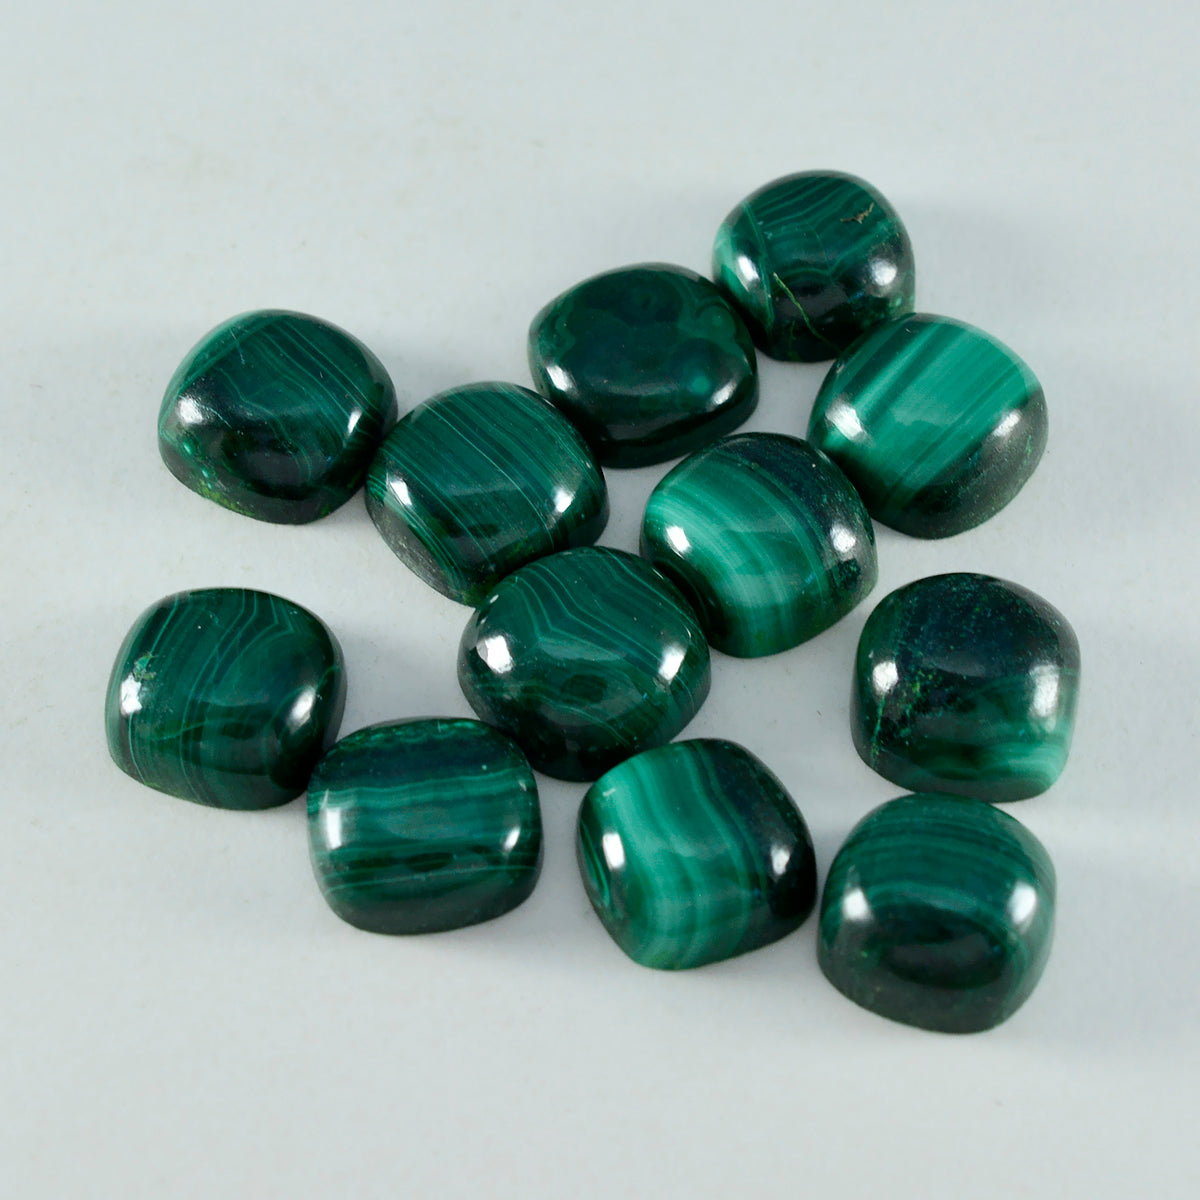 Riyogems 1 pieza cabujón de malaquita verde 4x4 mm forma de cojín gema de calidad fantástica